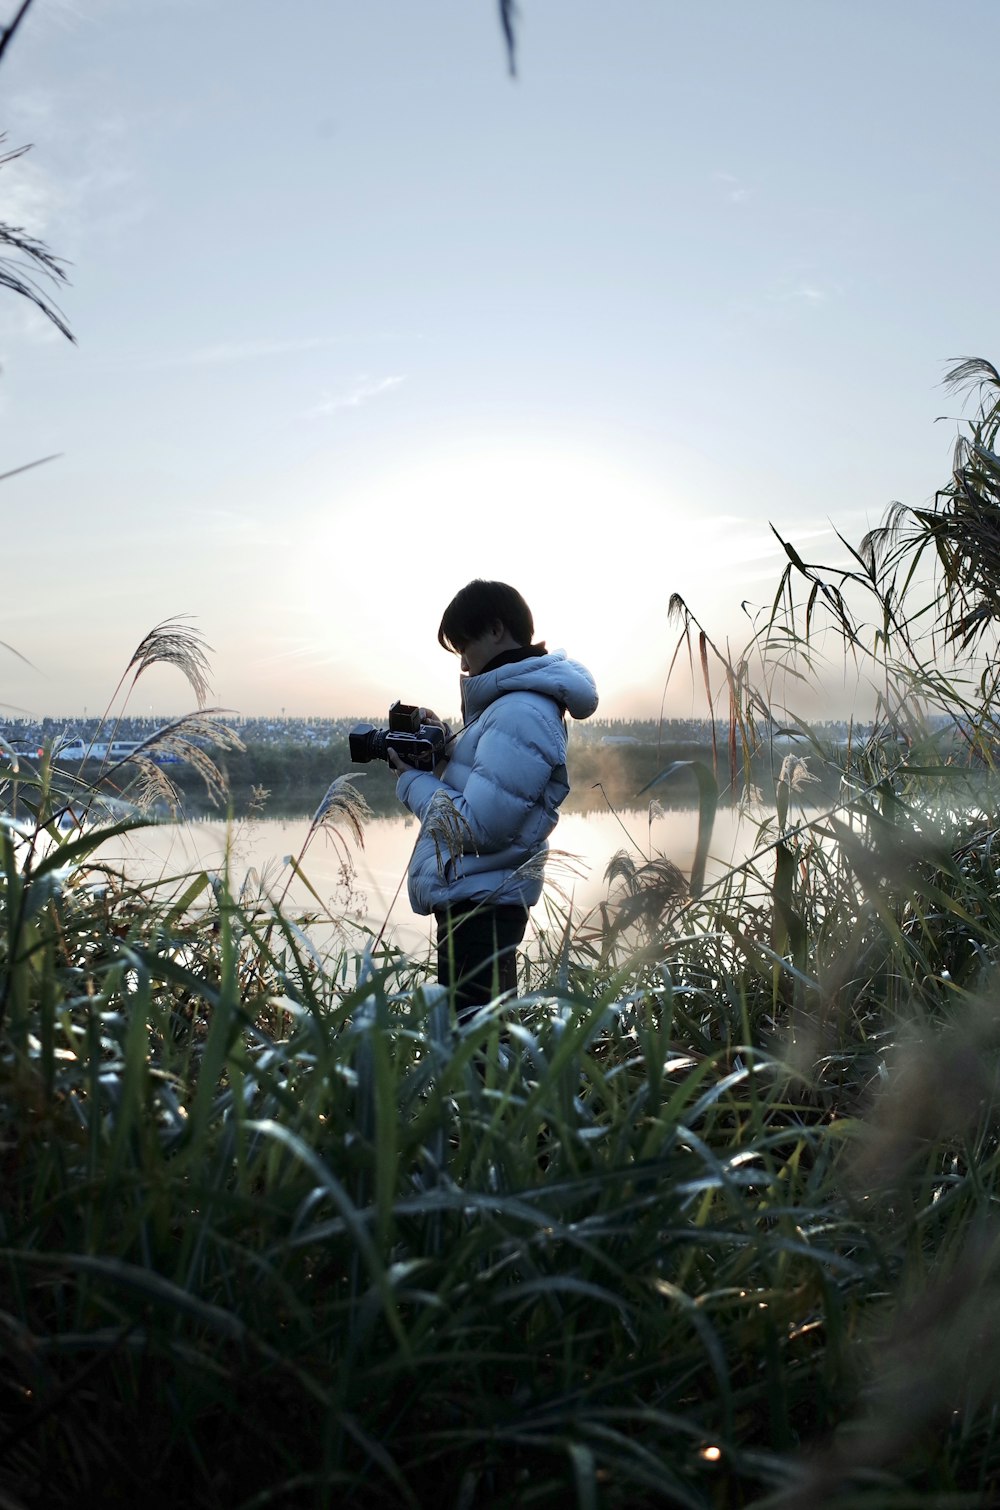 青いジャケットと黒いズボンを着た男が、緑の芝生の野原に立つ黒いデジタル一眼レフカメラを手にしている